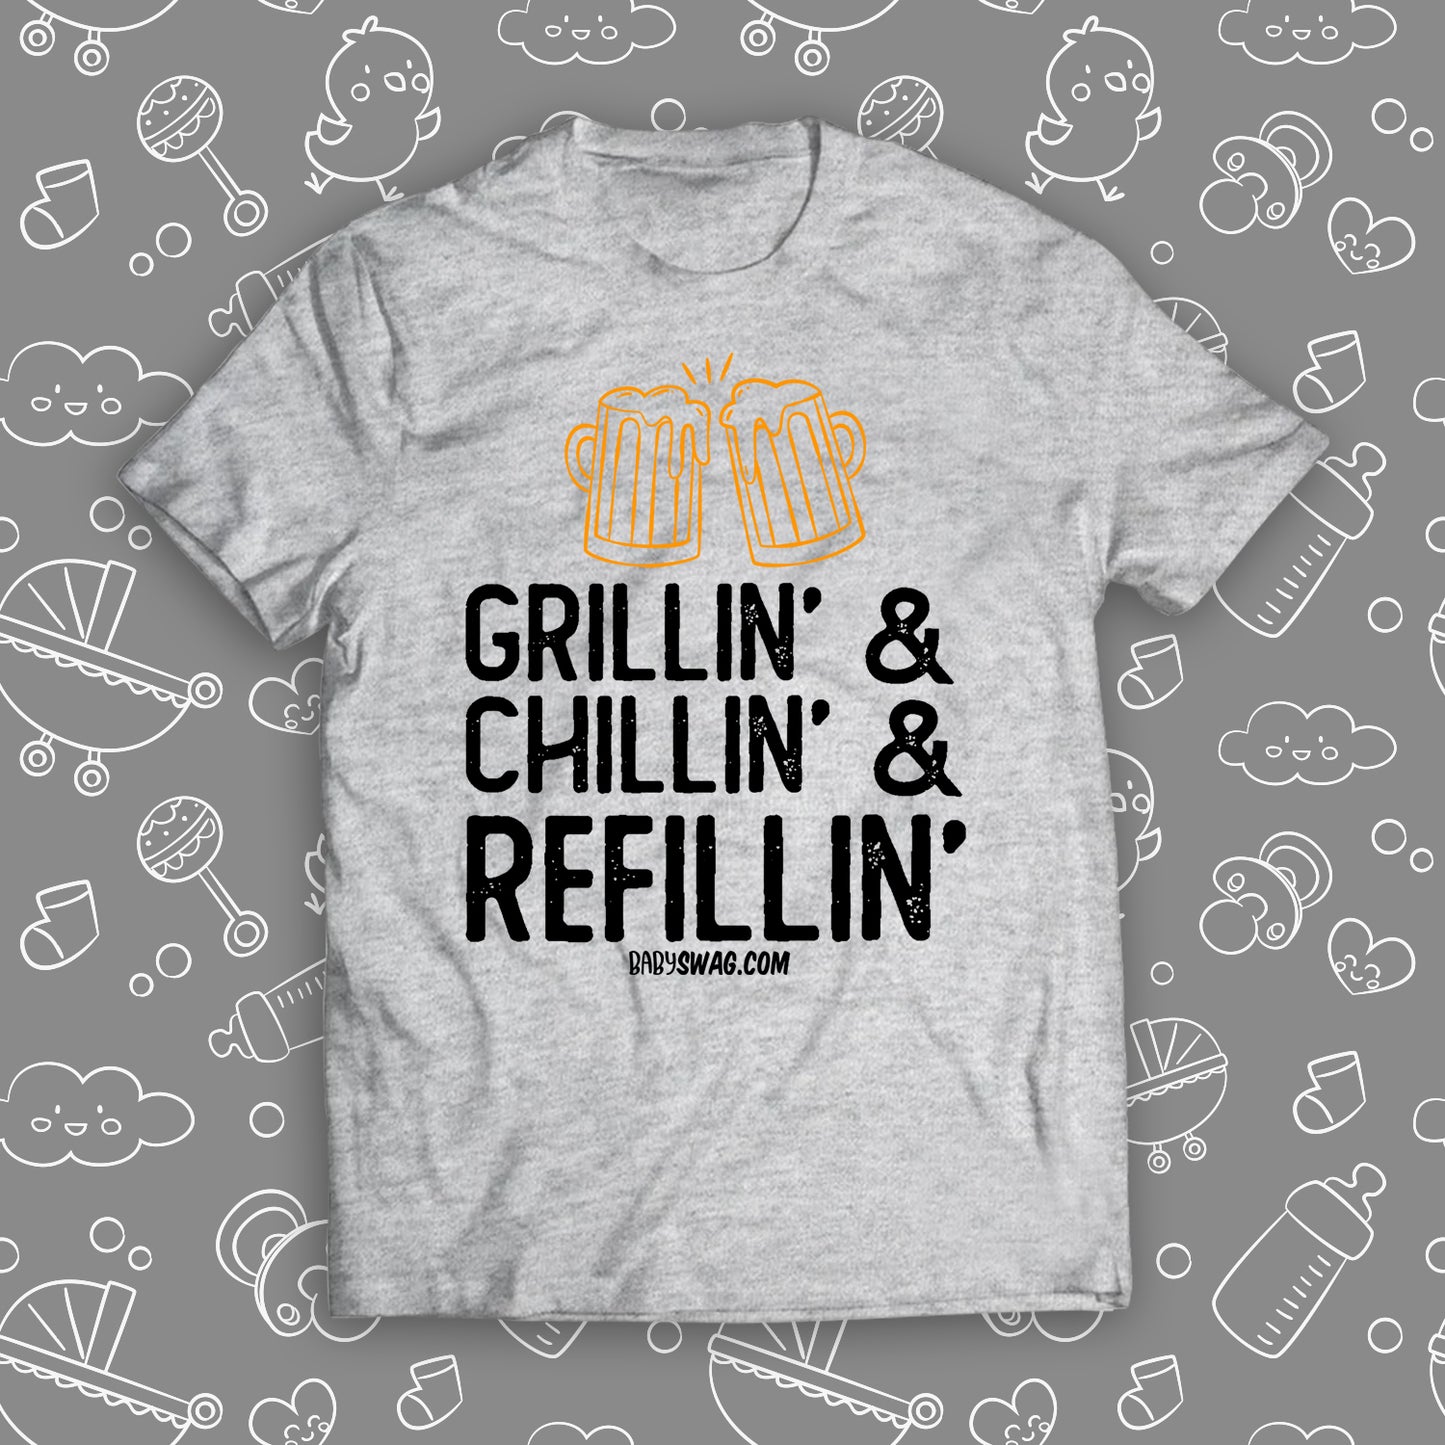 Grillin' & Chillin' & Reffillin'